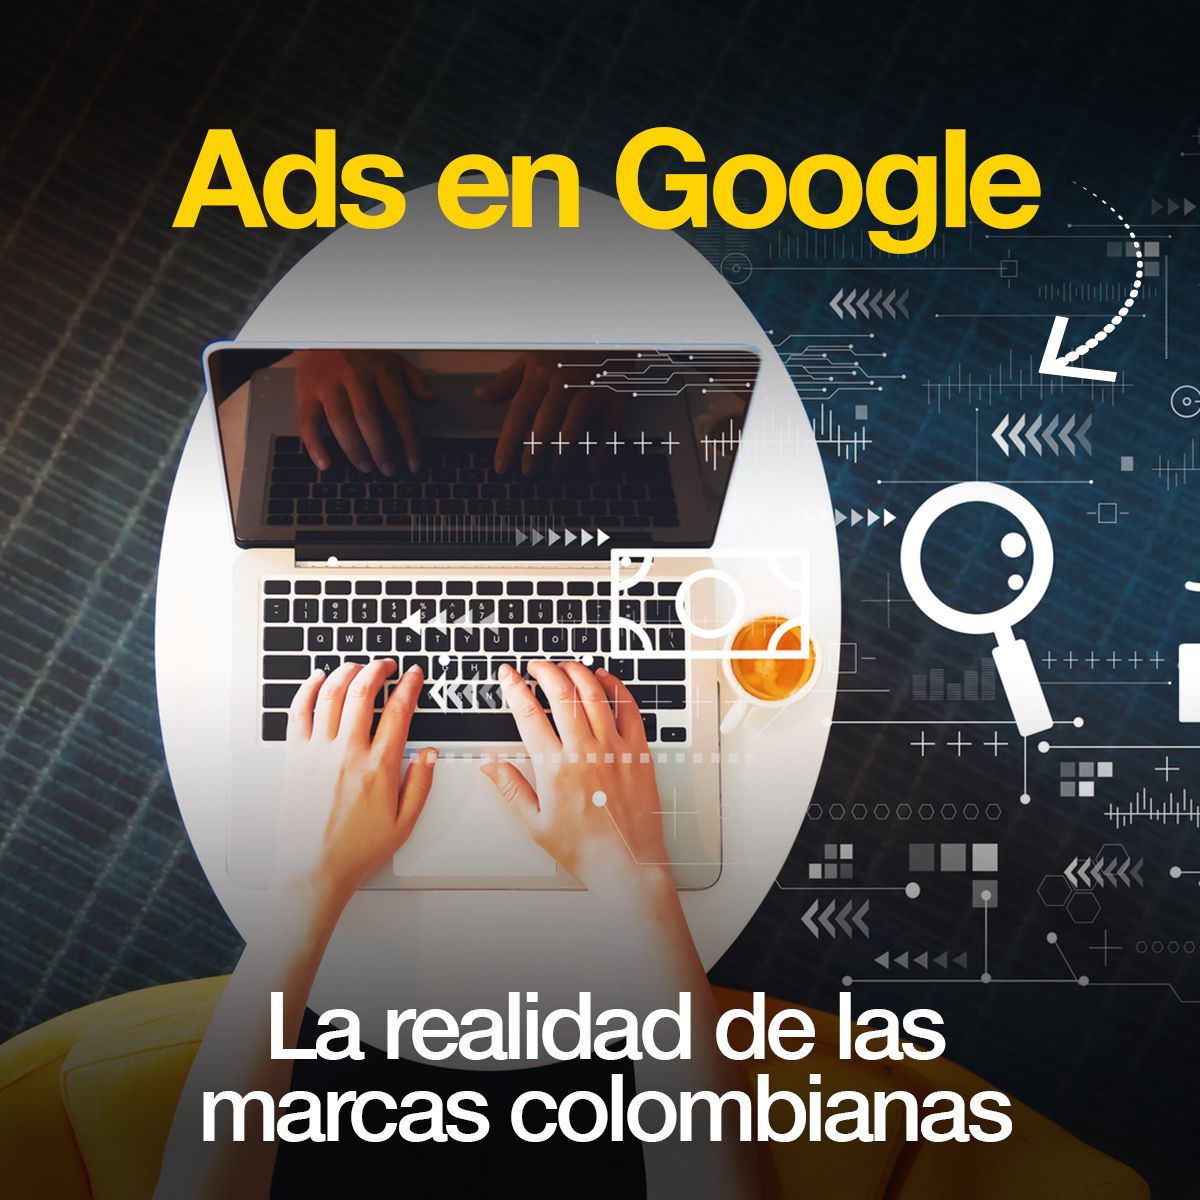 Ads en Google La realidad de las marcas colombianas